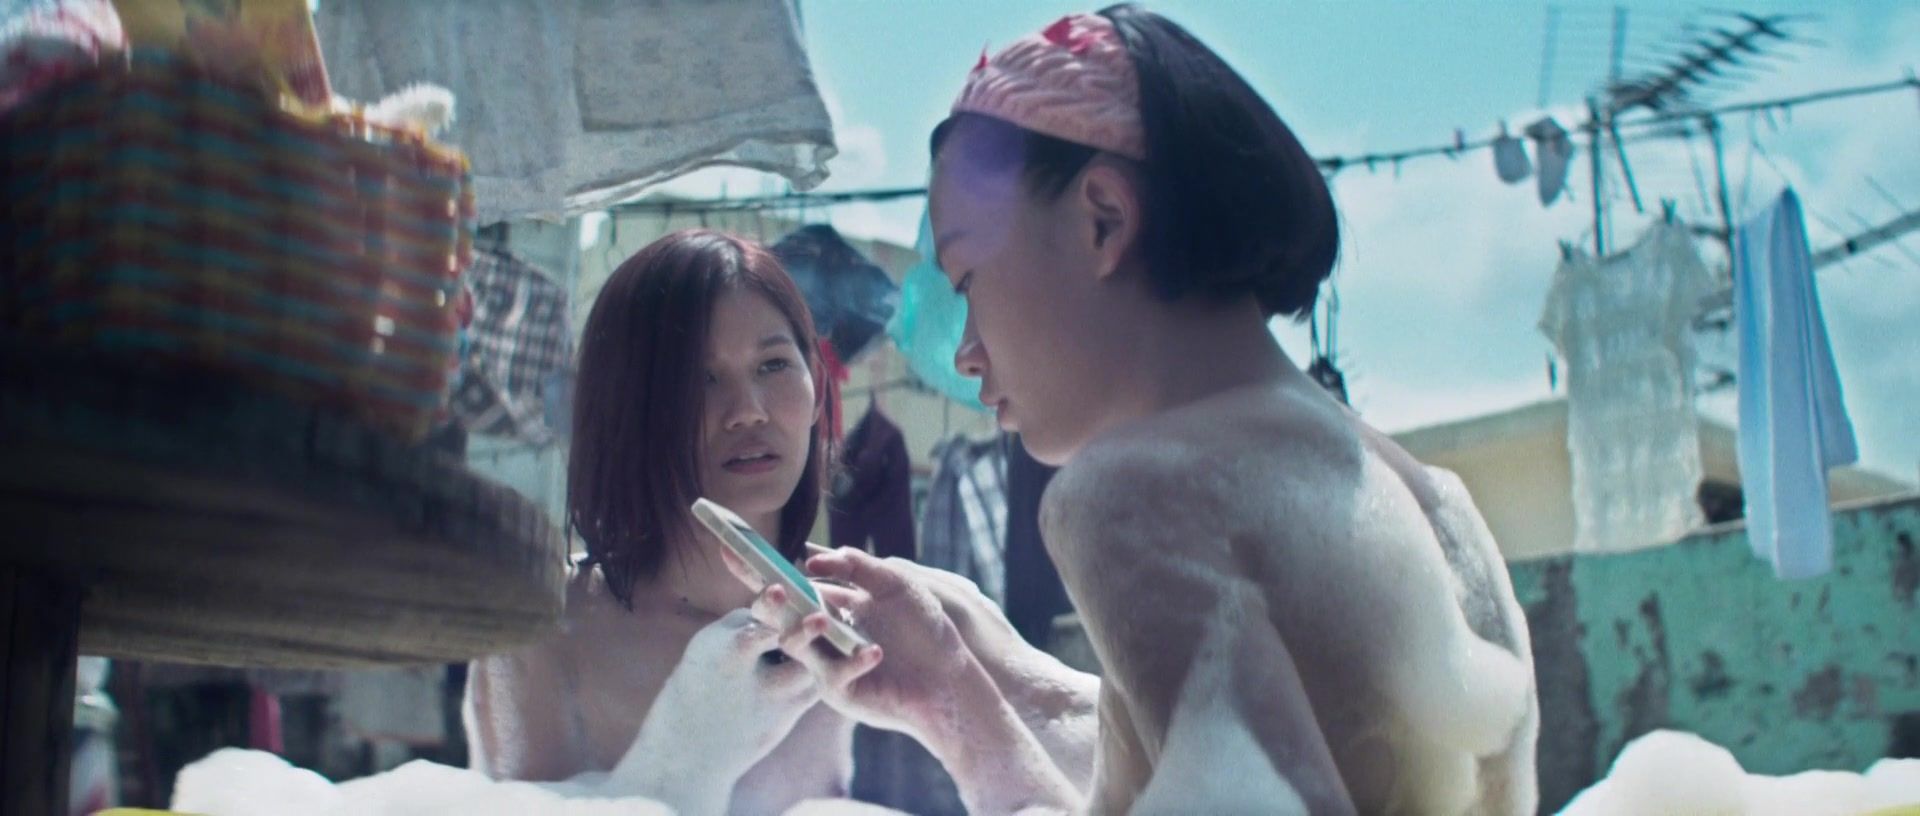 White Girl Ashina Kwok, Koyi Mak, Fish Liew nude - Tung baan tung hok (2015) Huge - 2